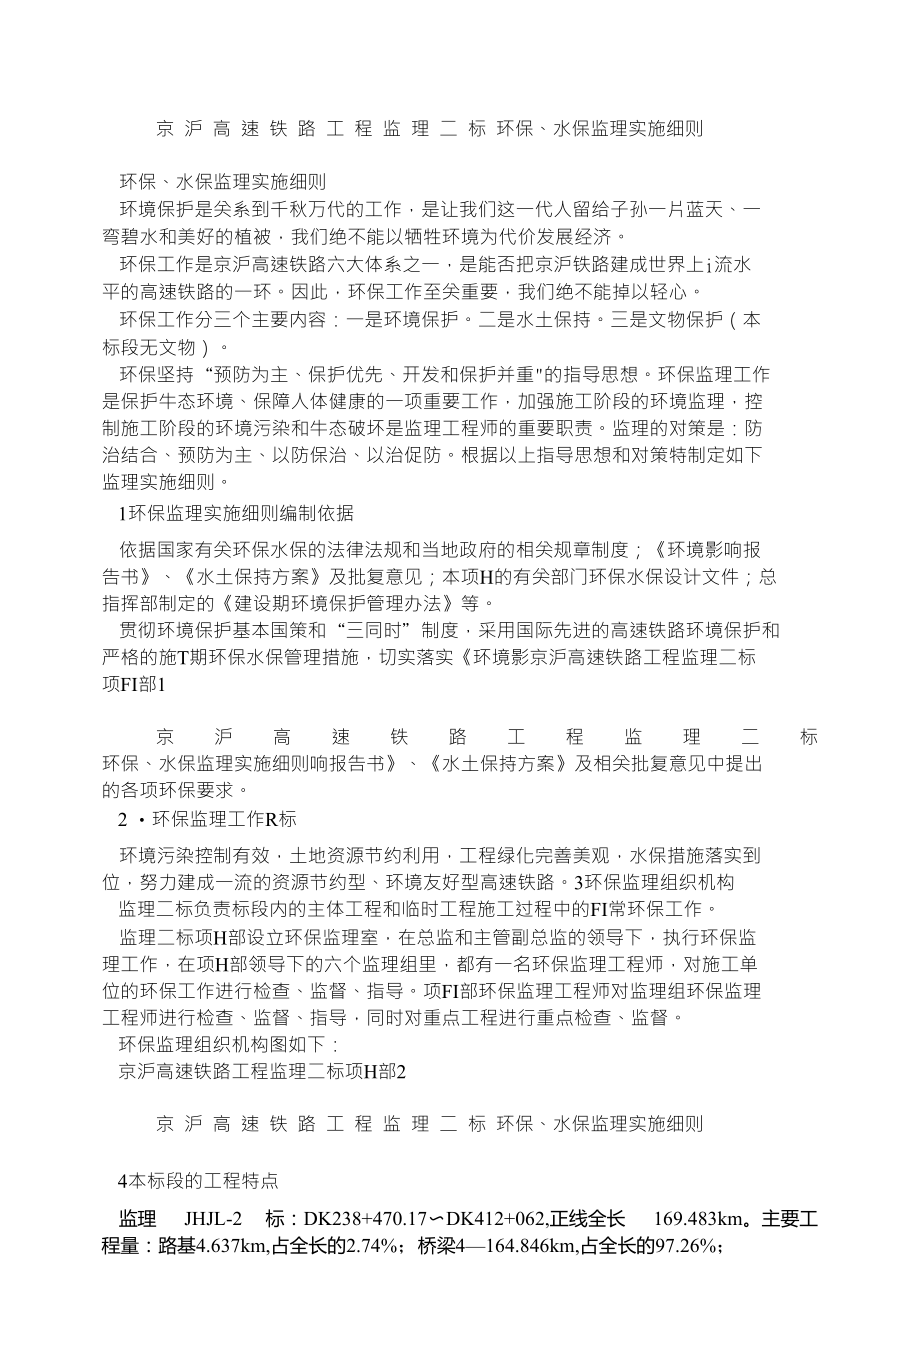 京 沪 高 速 铁 路 工 程 监 理 二 标 环保、水保监理实施细则_第1页